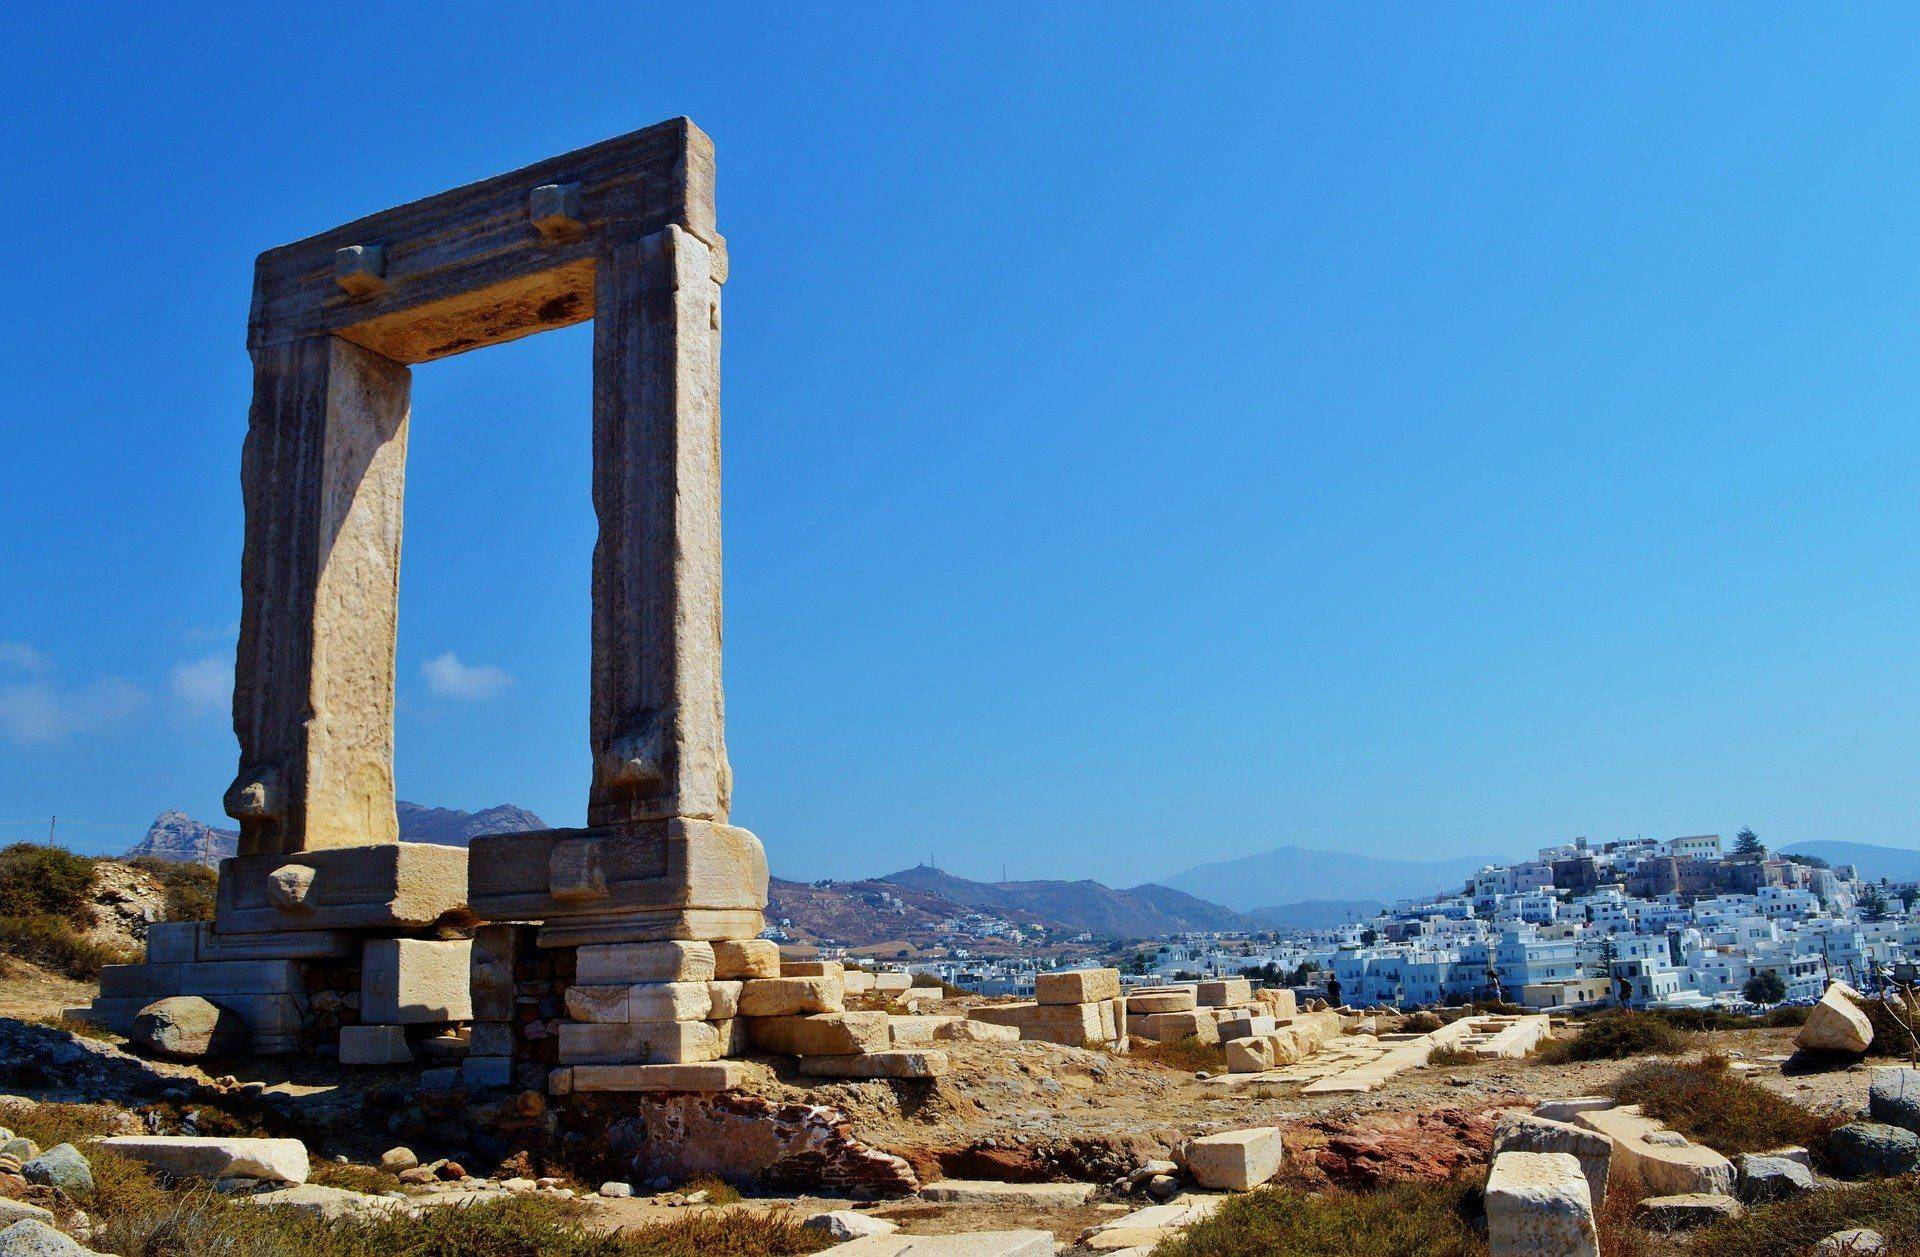 Départ de Milos & arrivée à Naxos